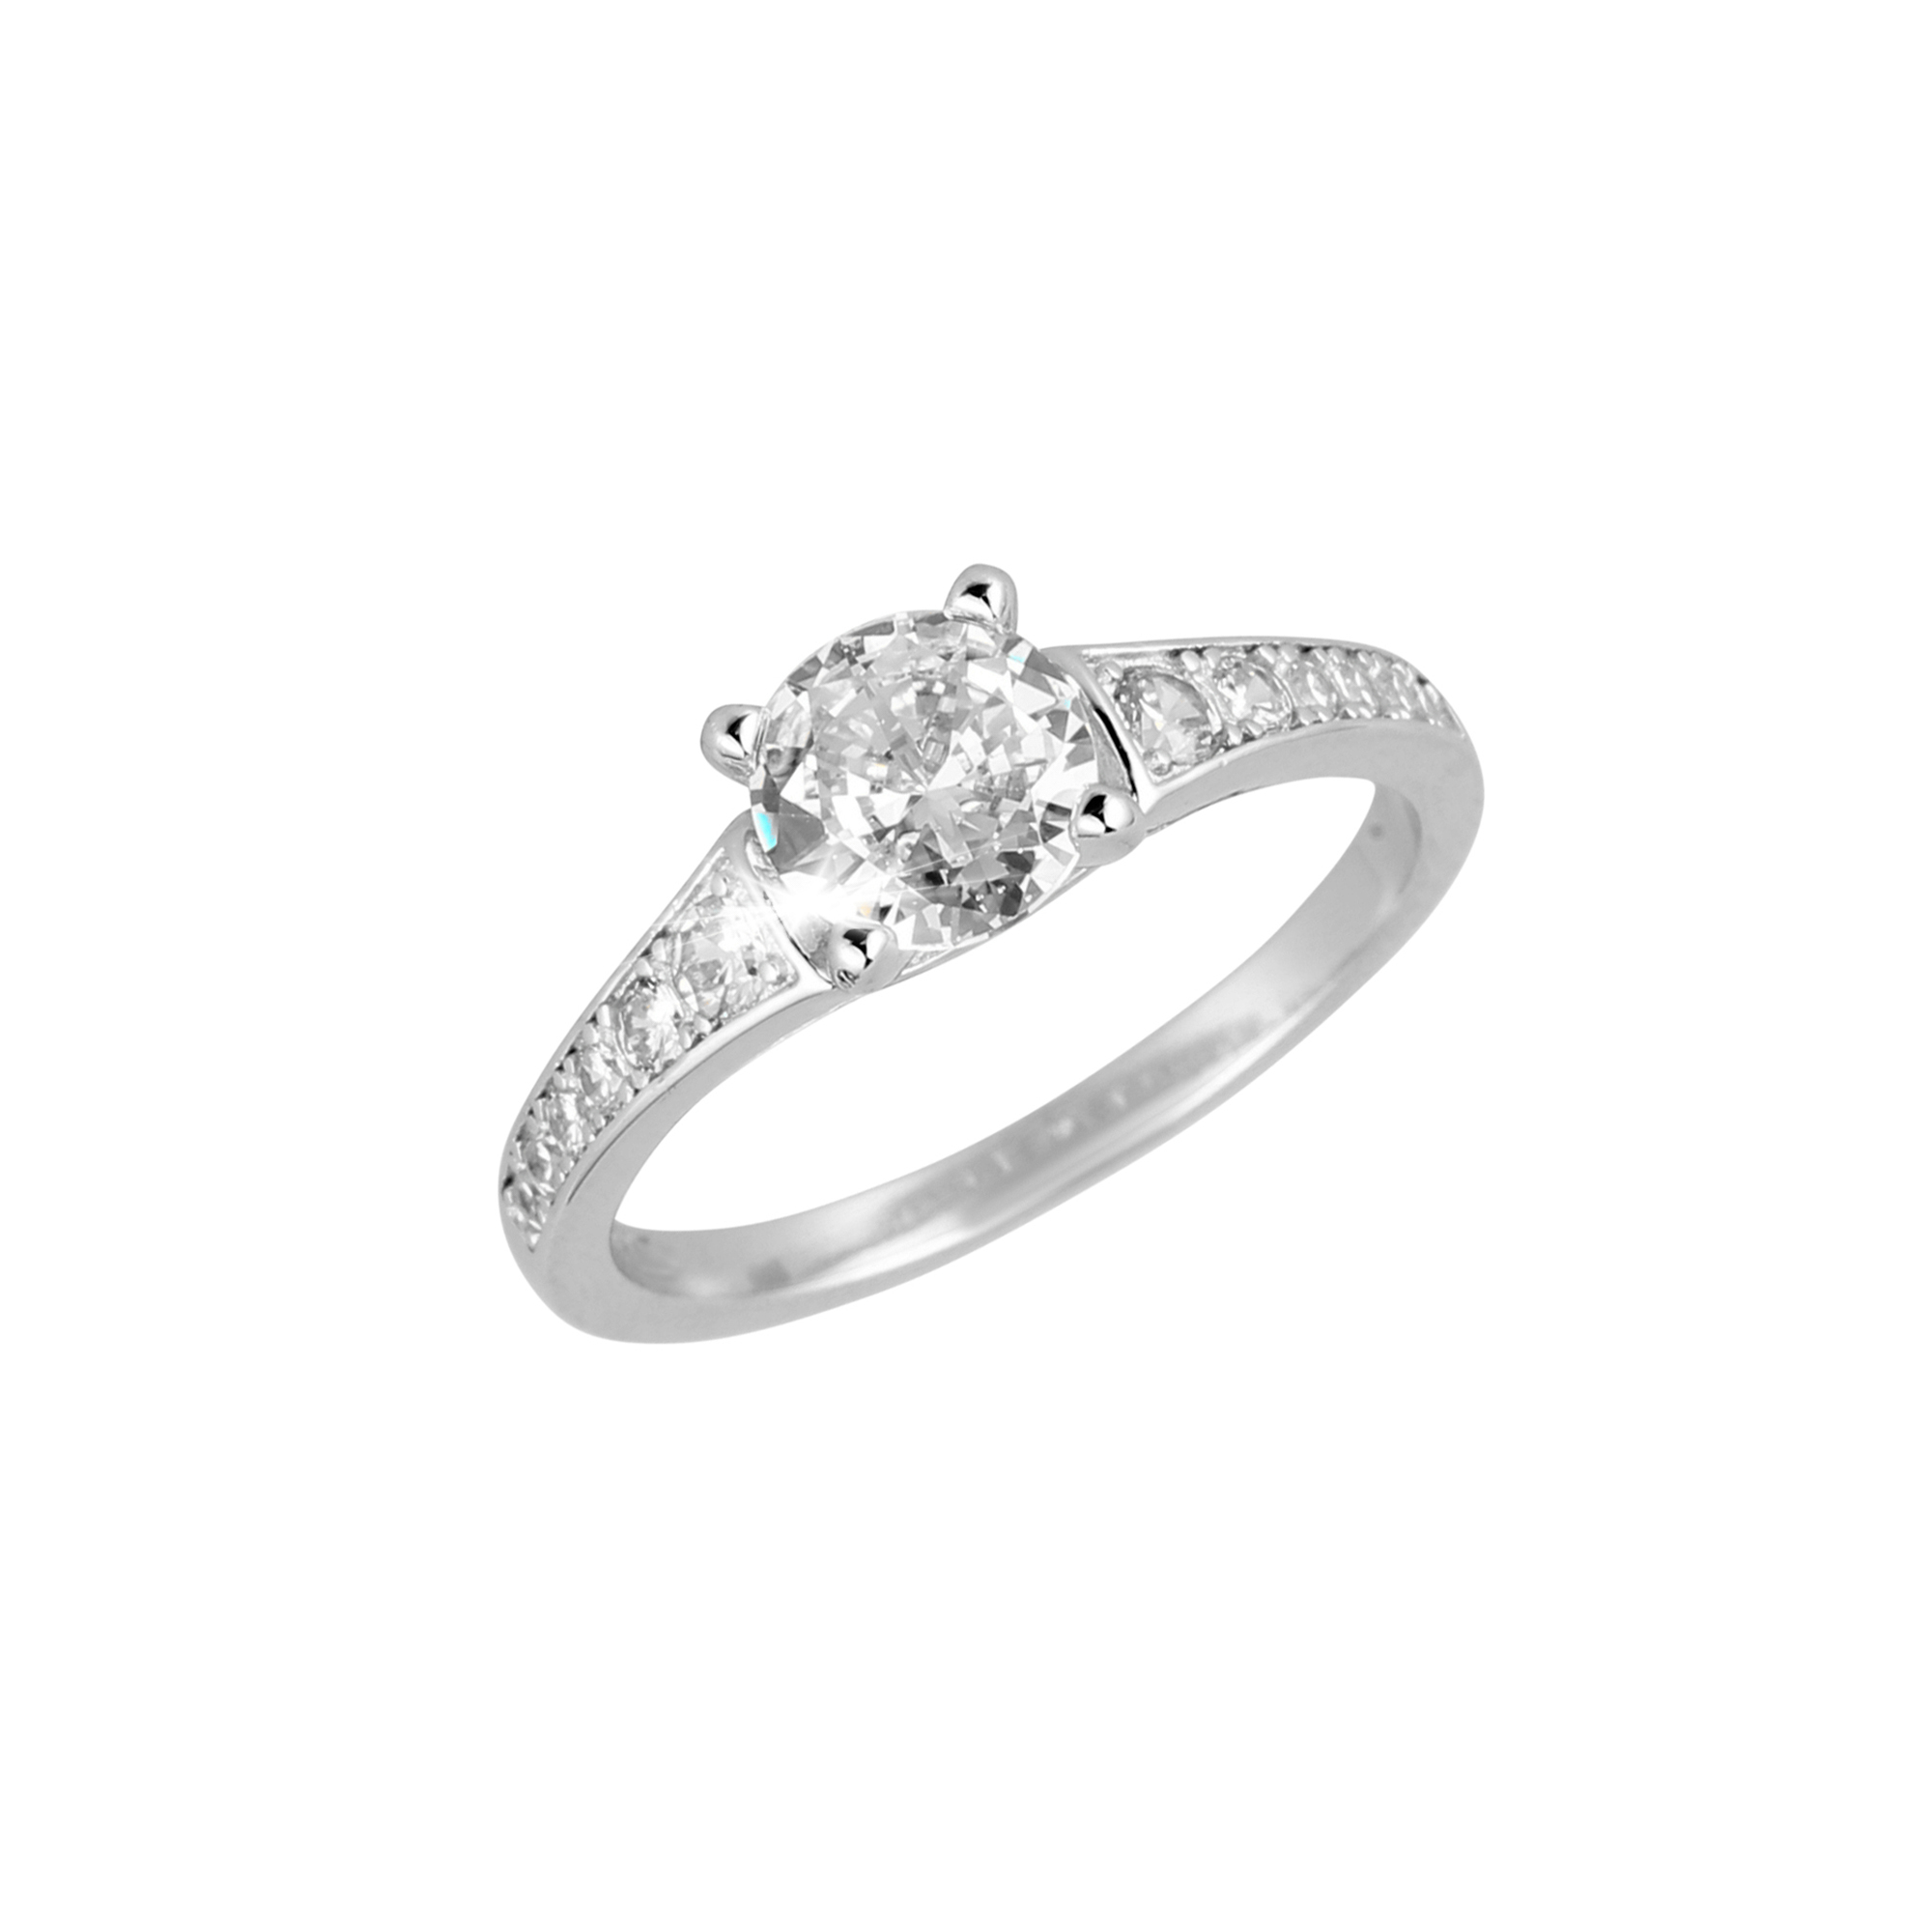 Evolution Group Stříbrný prsten luxusní se zirkony bílý čtverec 15009.1 crystal